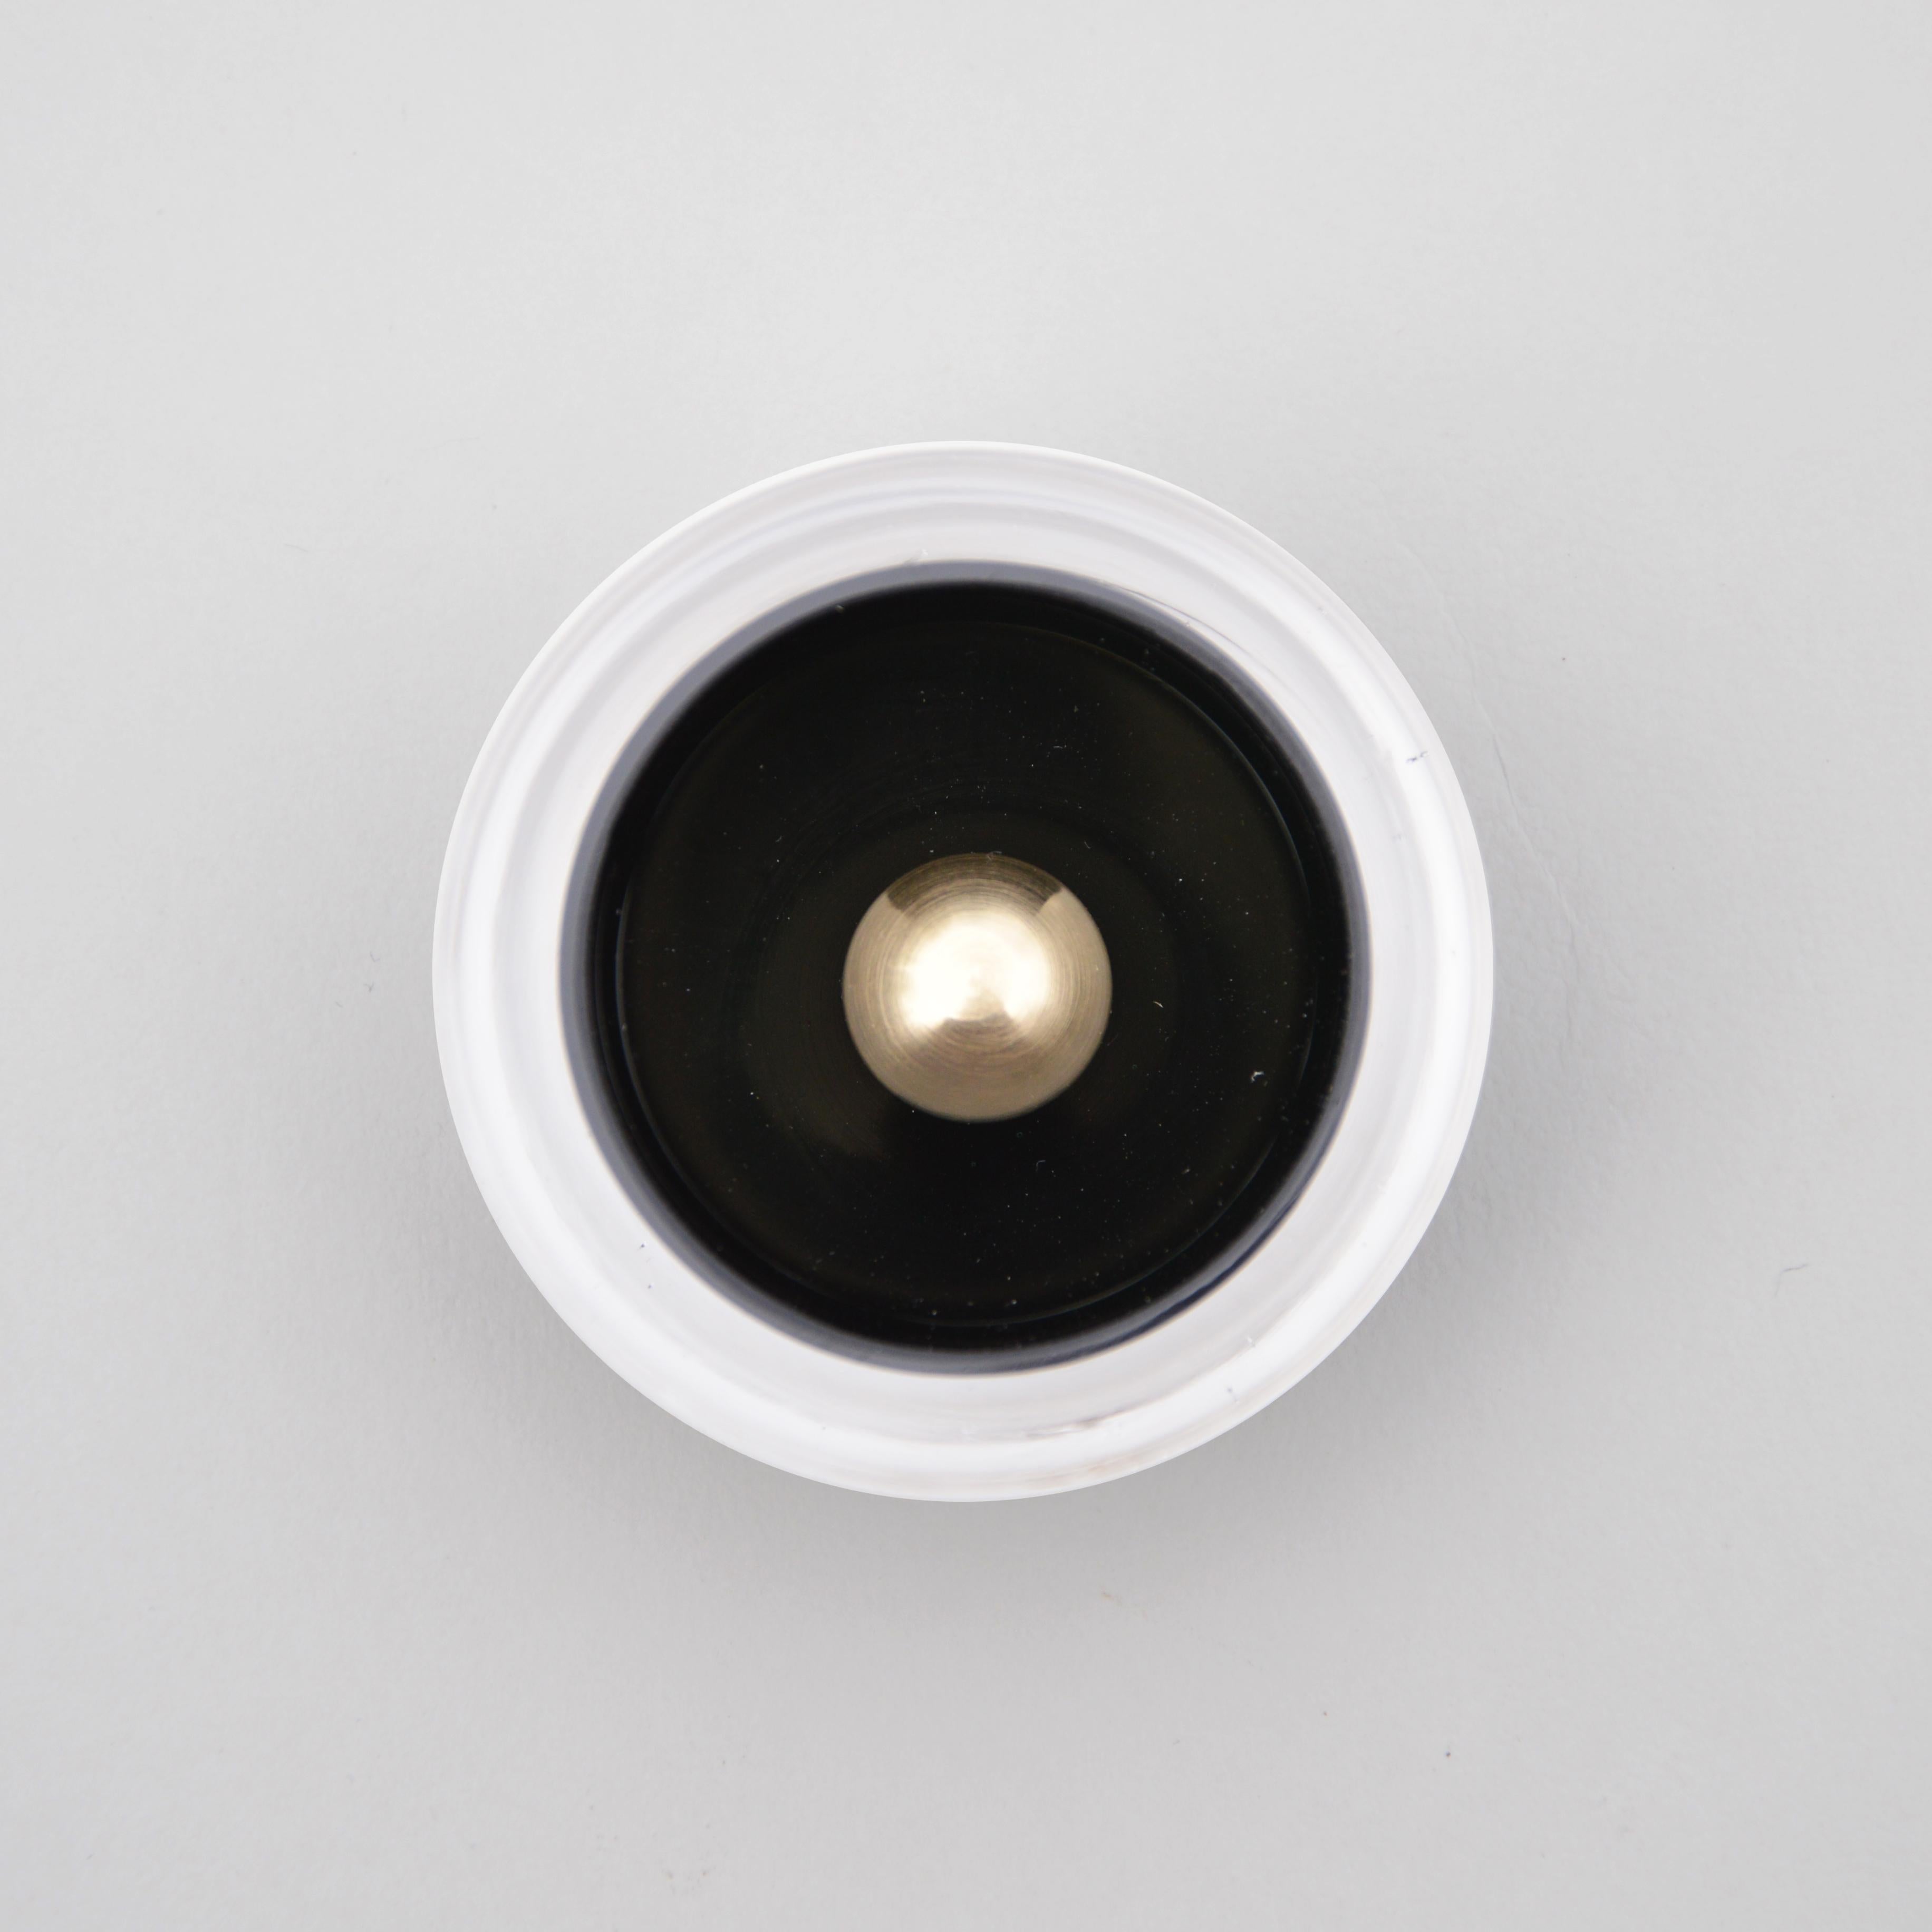 Einzigartiger Mailänder Schrankknopf von Atelier George
Einzigartig
Abmessungen: Ø 5 x H 2,5 cm
MATERIALIEN: Mundgeblasenes Glas, Messing

Das Atelier George ist ein französisches Design- und Glasbläserstudio. Jedes Stück ist handgefertigt und